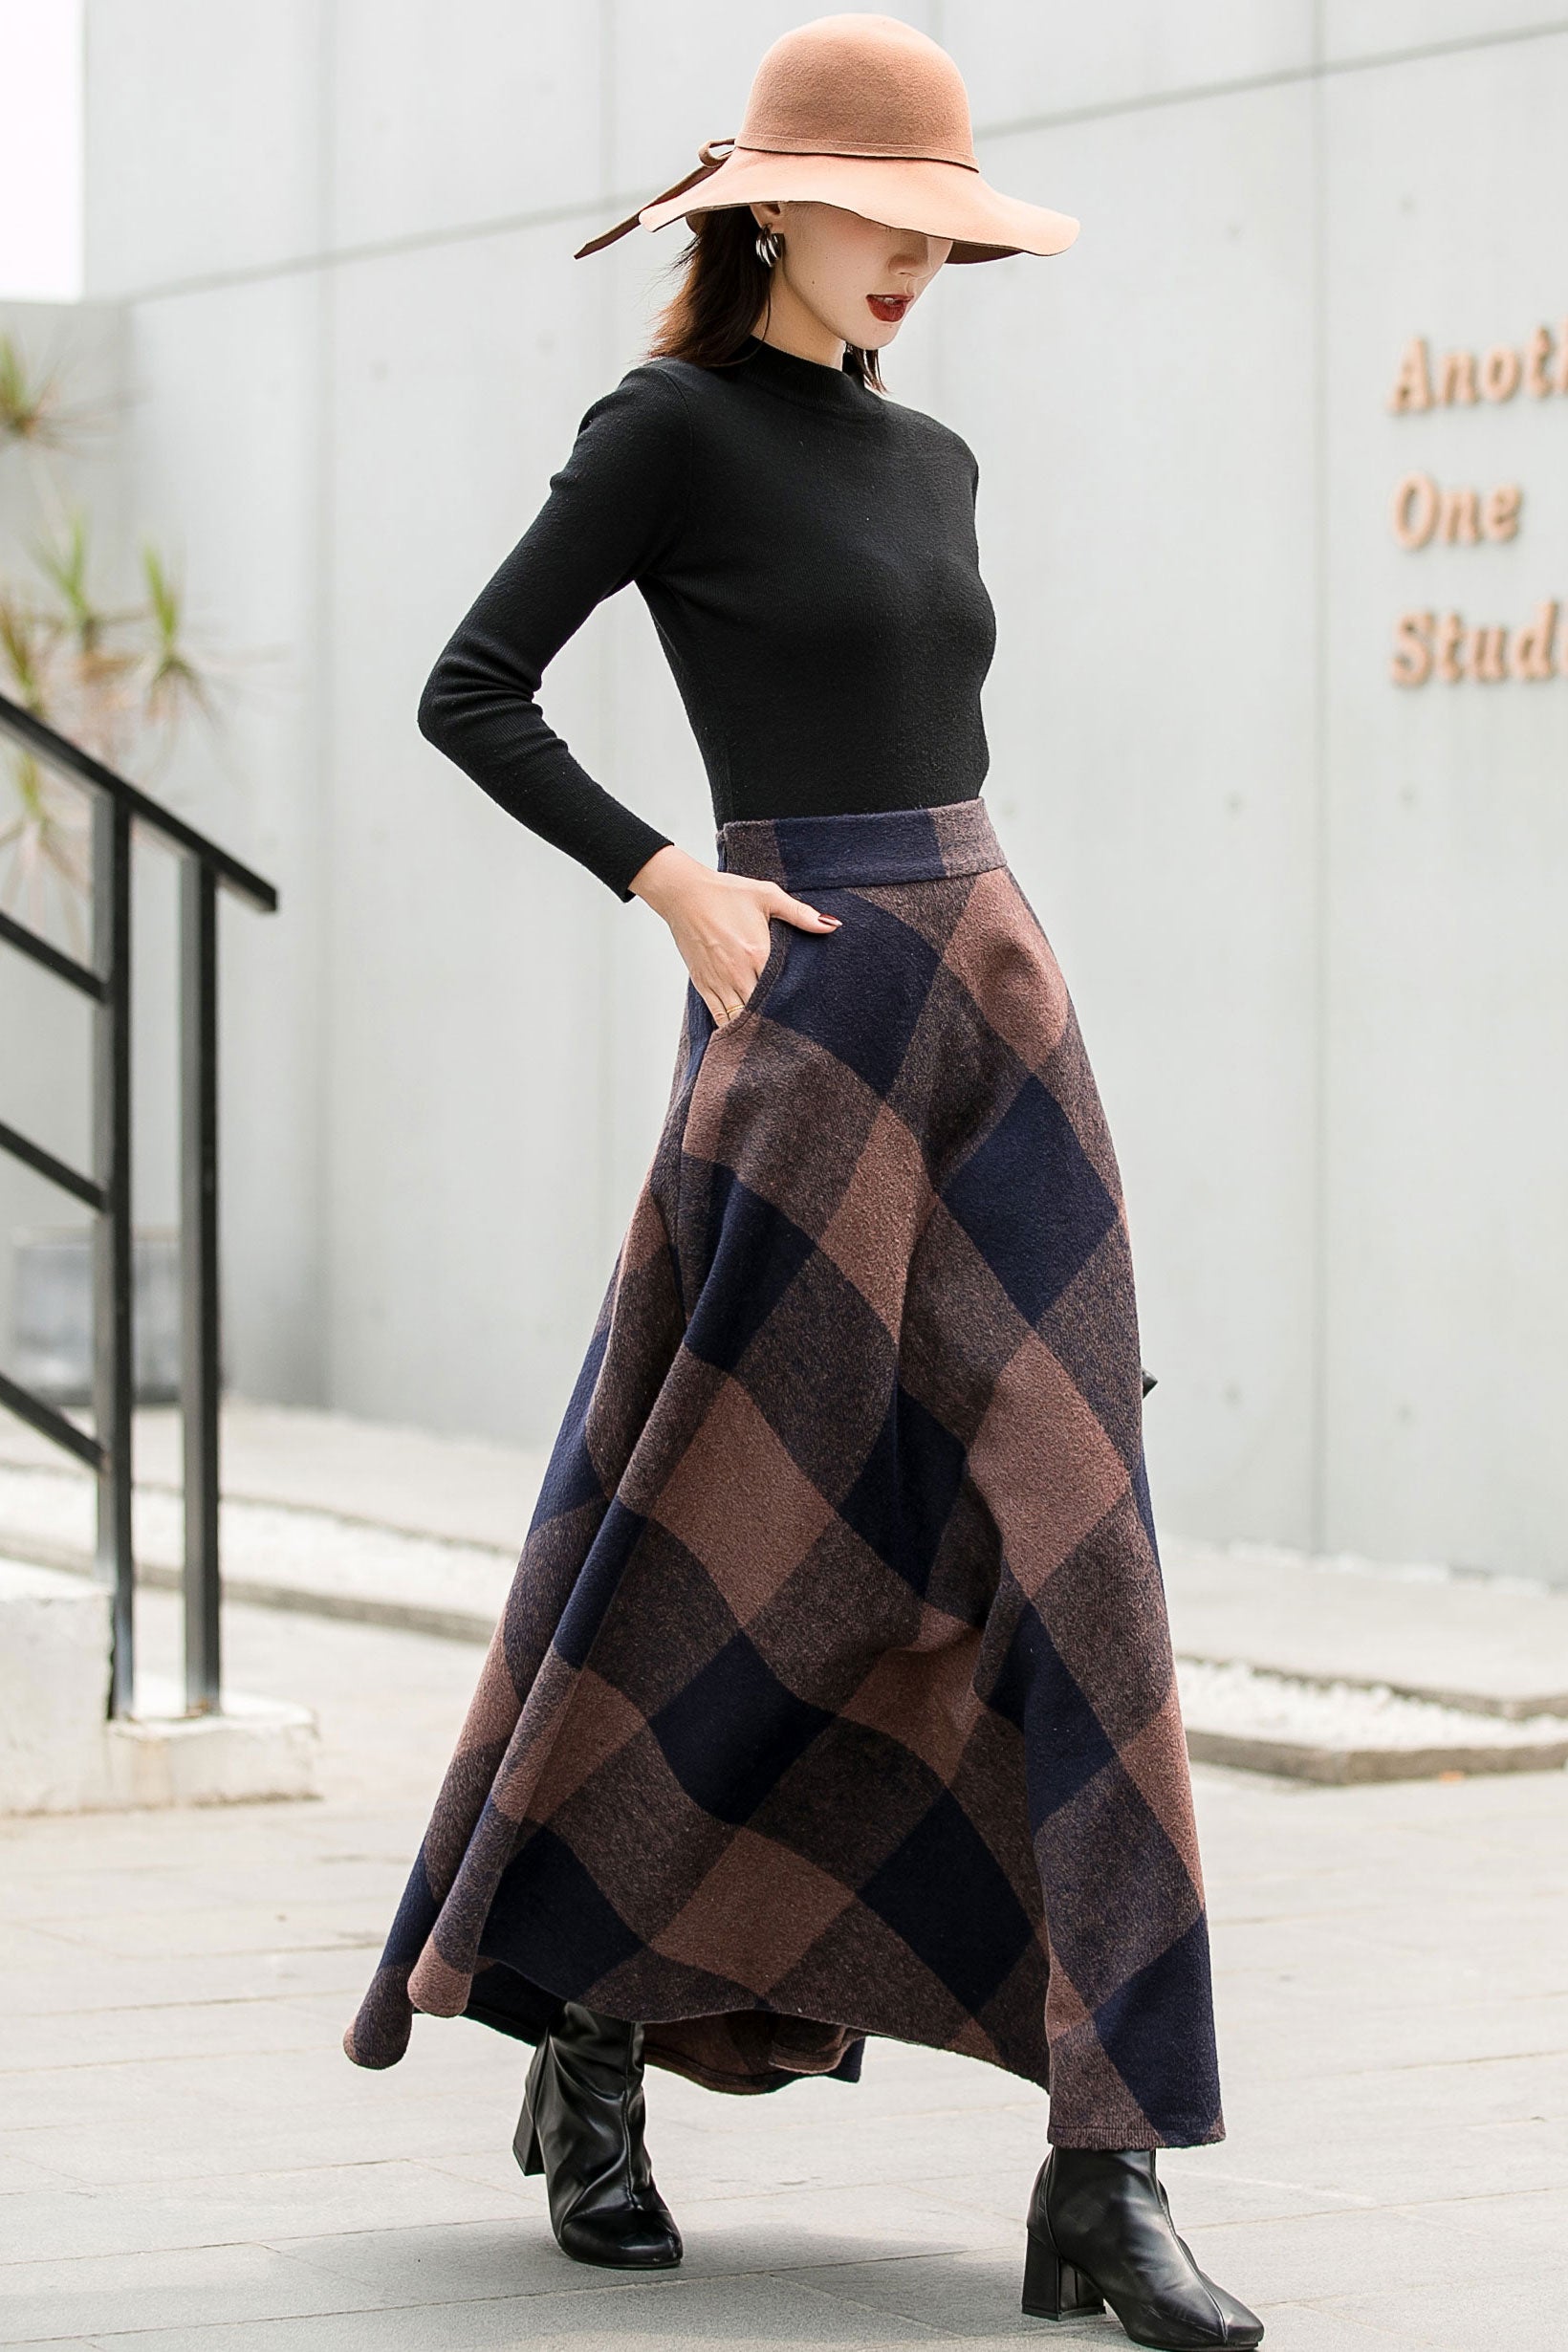 Vintage Plaid Skirt  Midi skirt outfit, Tartan skirt outfit, Pleated skirt  outfit